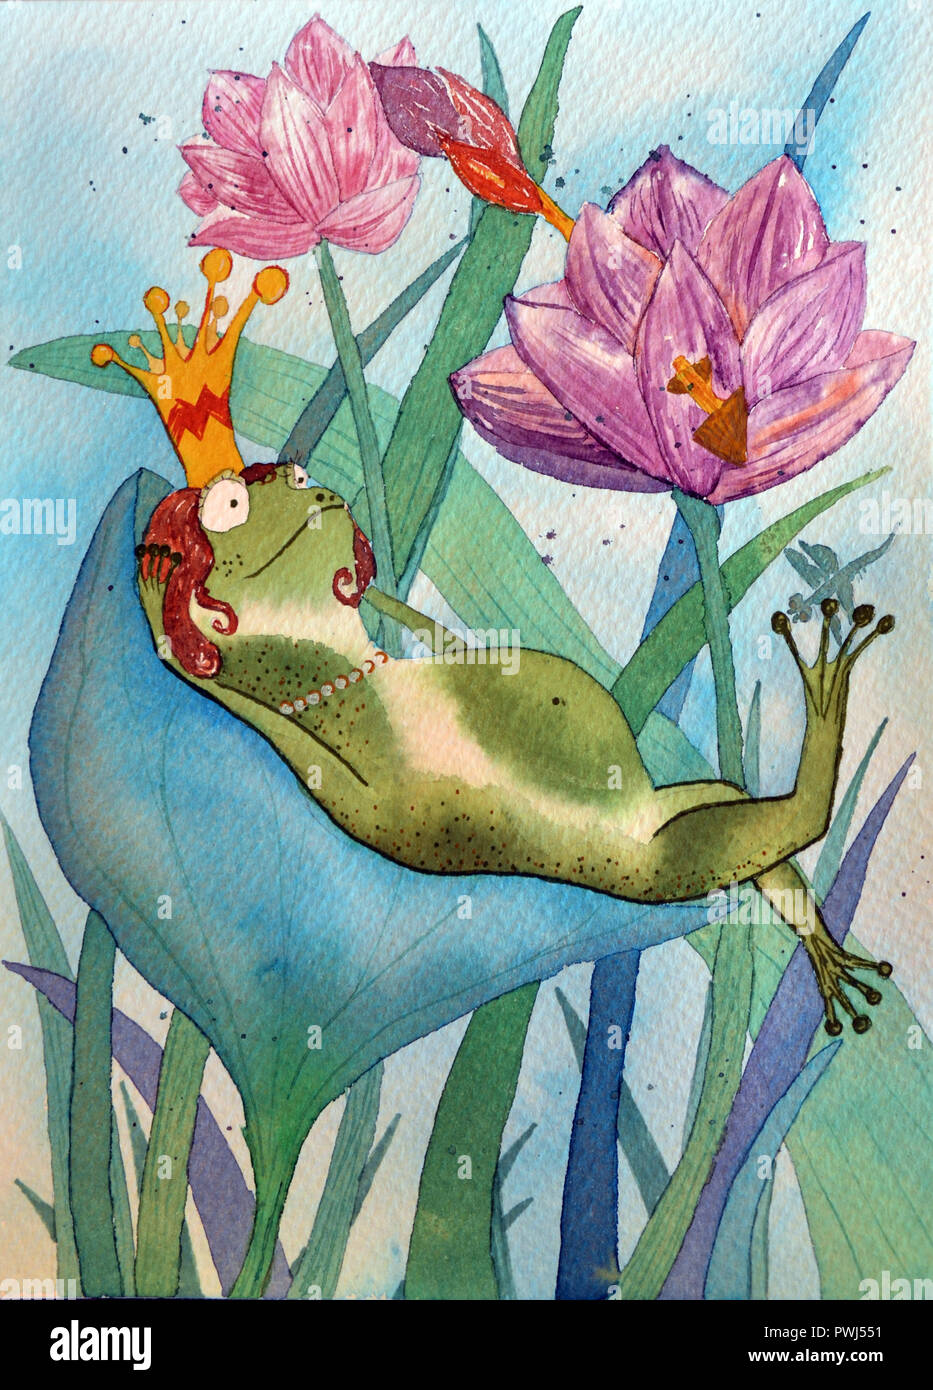 Rana en corona. Ilustración dibujo acuarela de mano de la Reina rana en lotos Foto de stock